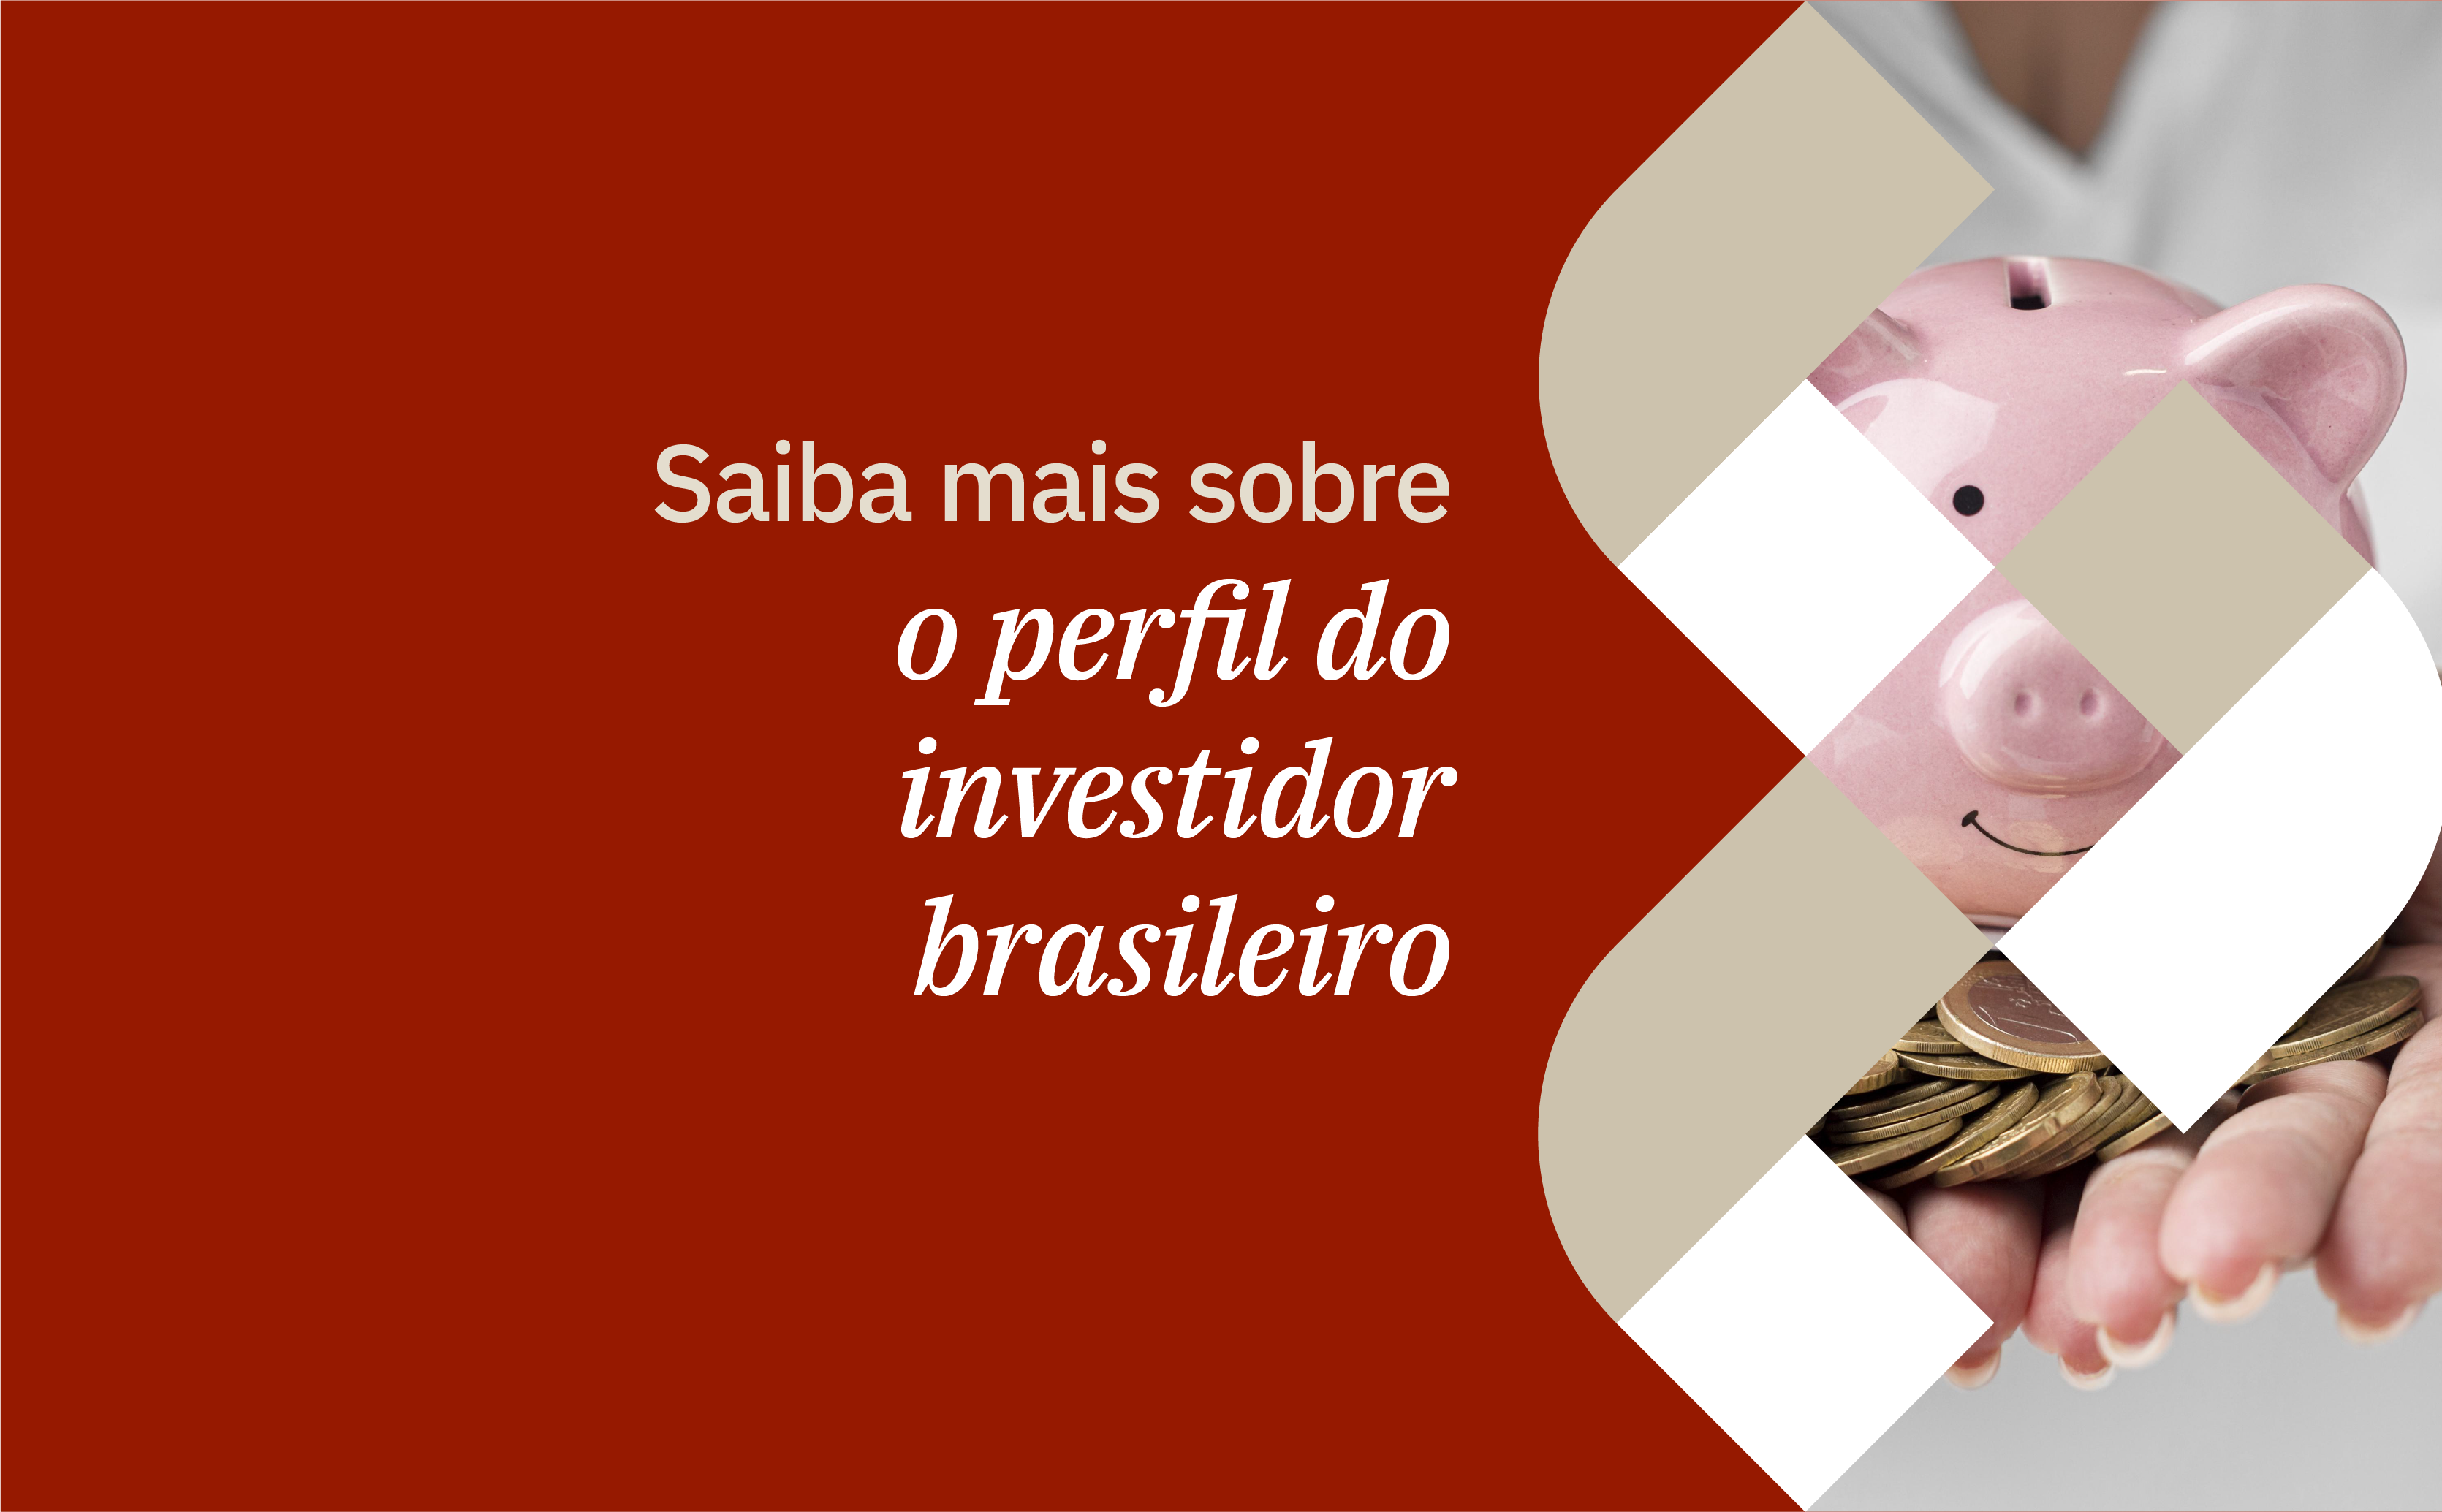 Um cofre no formato de porquinho e várias moedas ilustram a capa do guia sobre o perfil do investidor brasileiro produzido pela RTM.